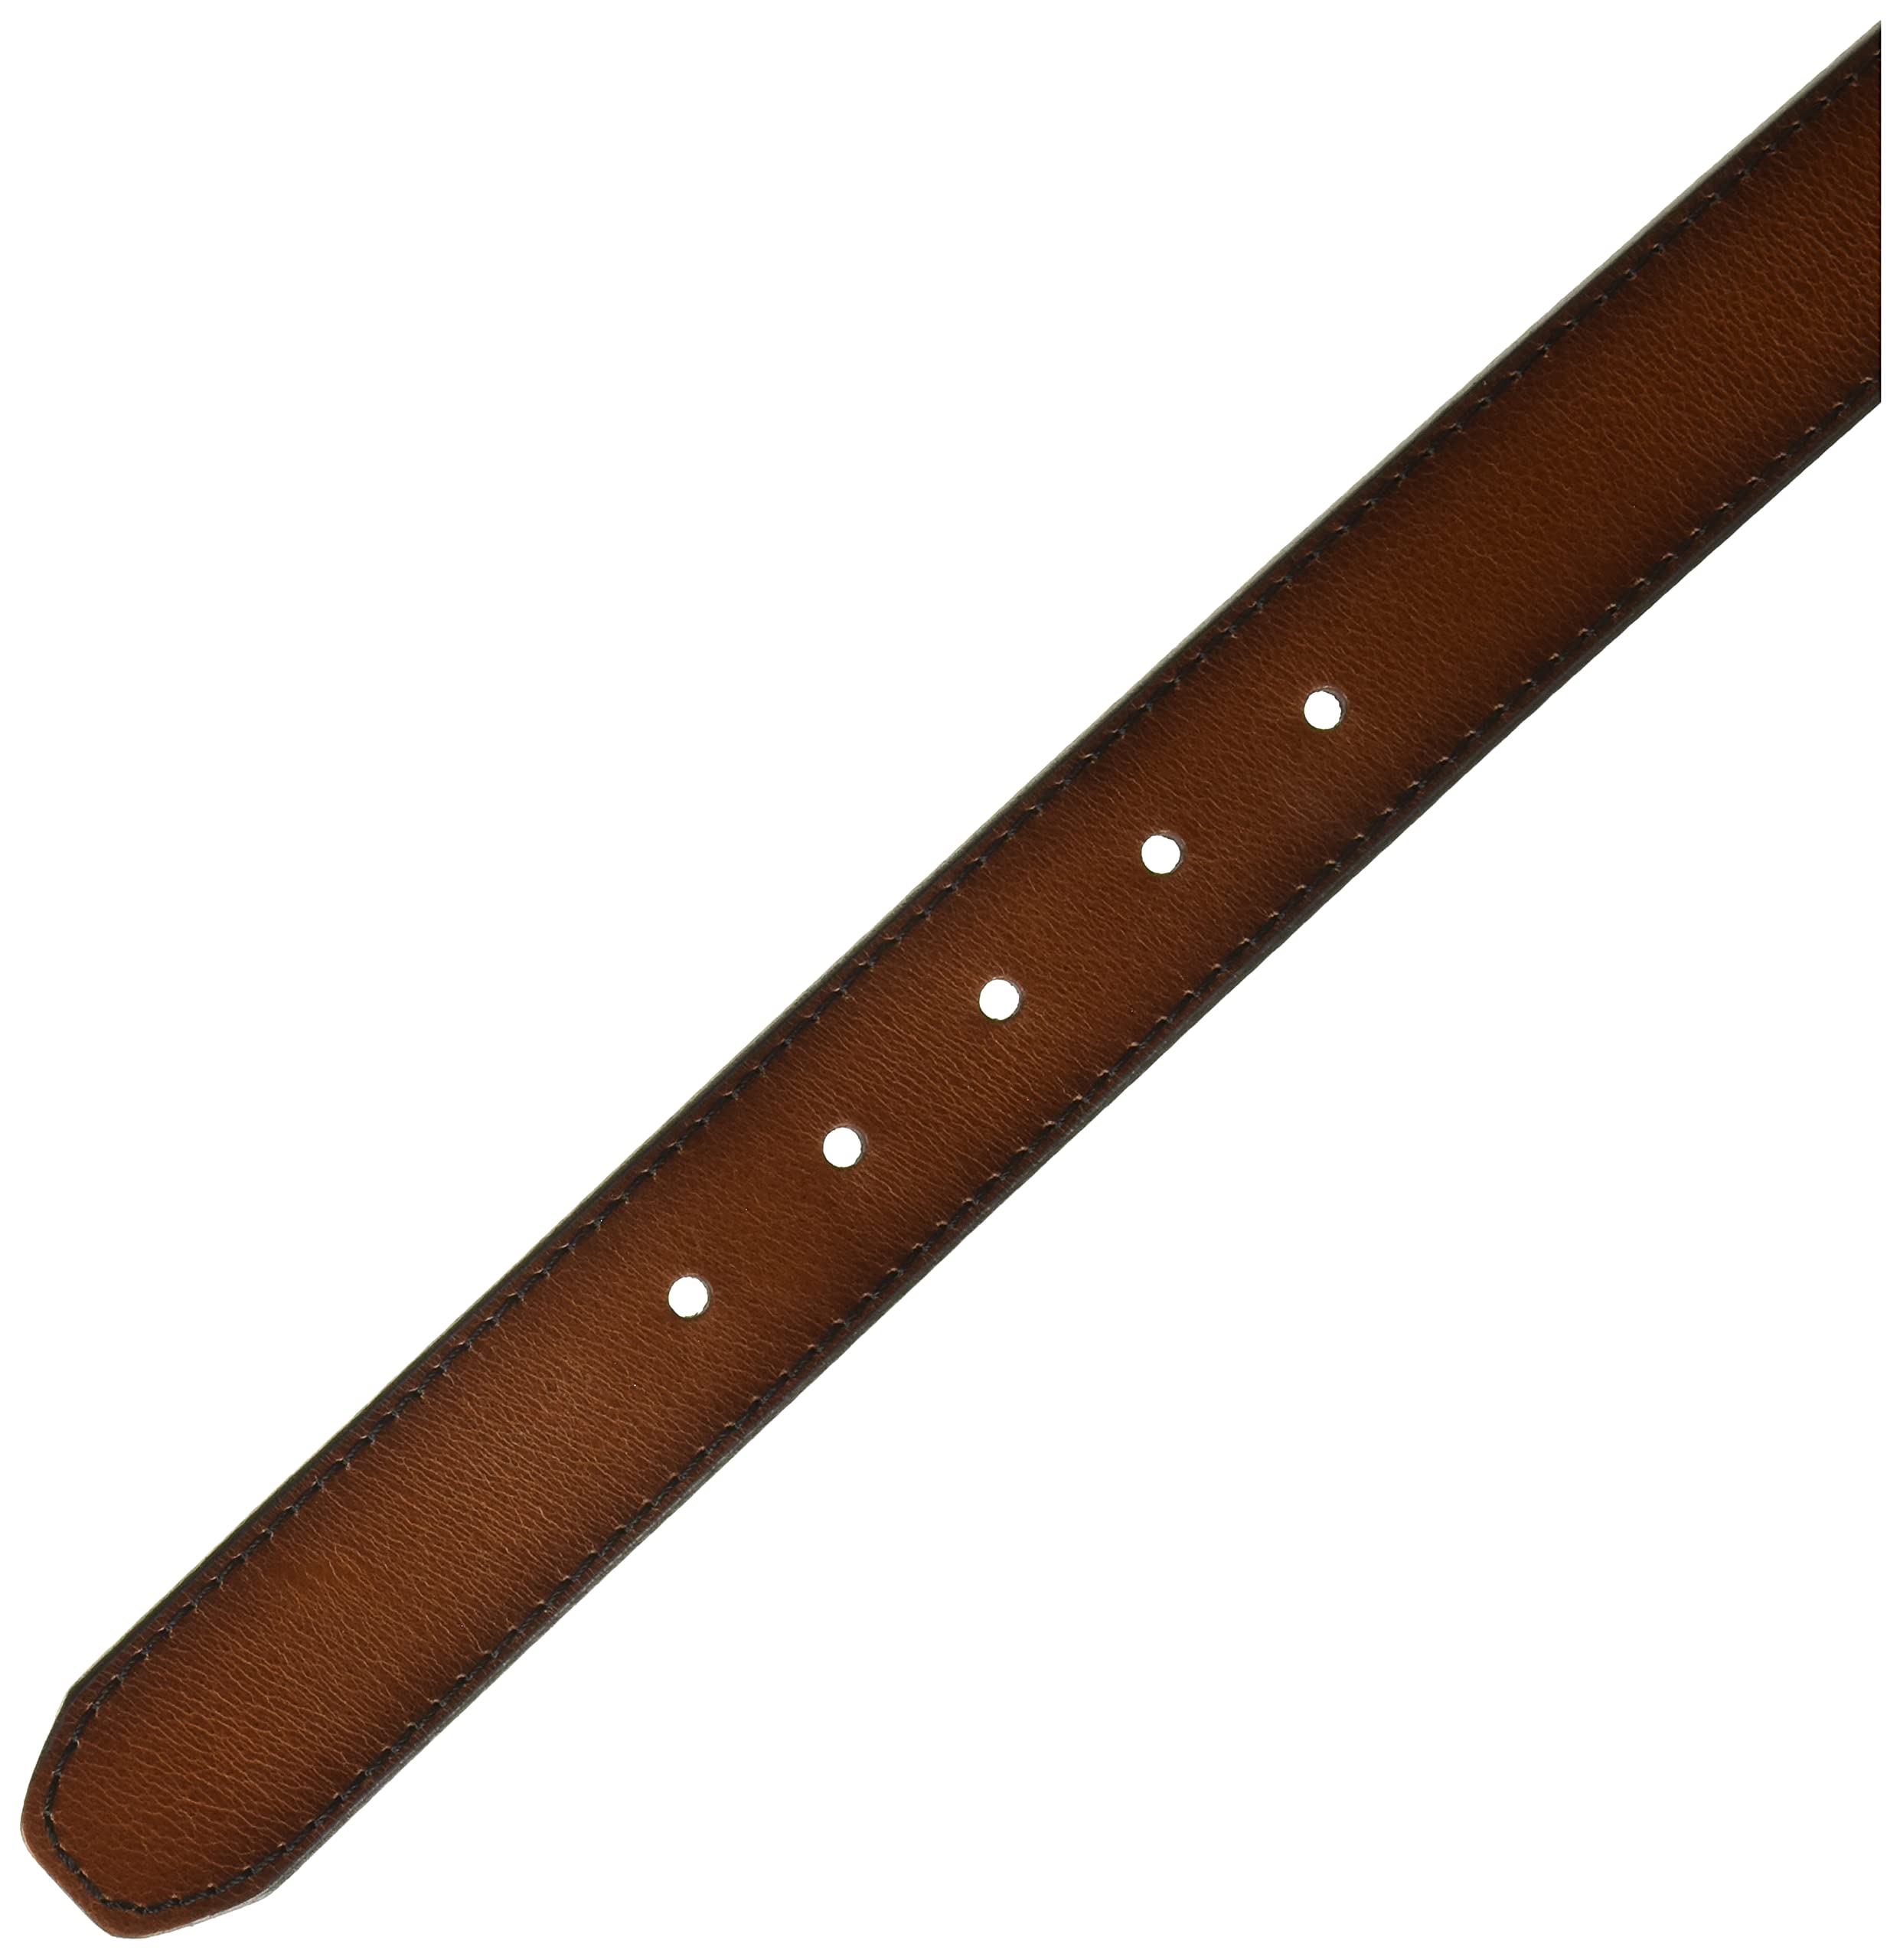 Fossil Men's Brown Leather Belt for Men